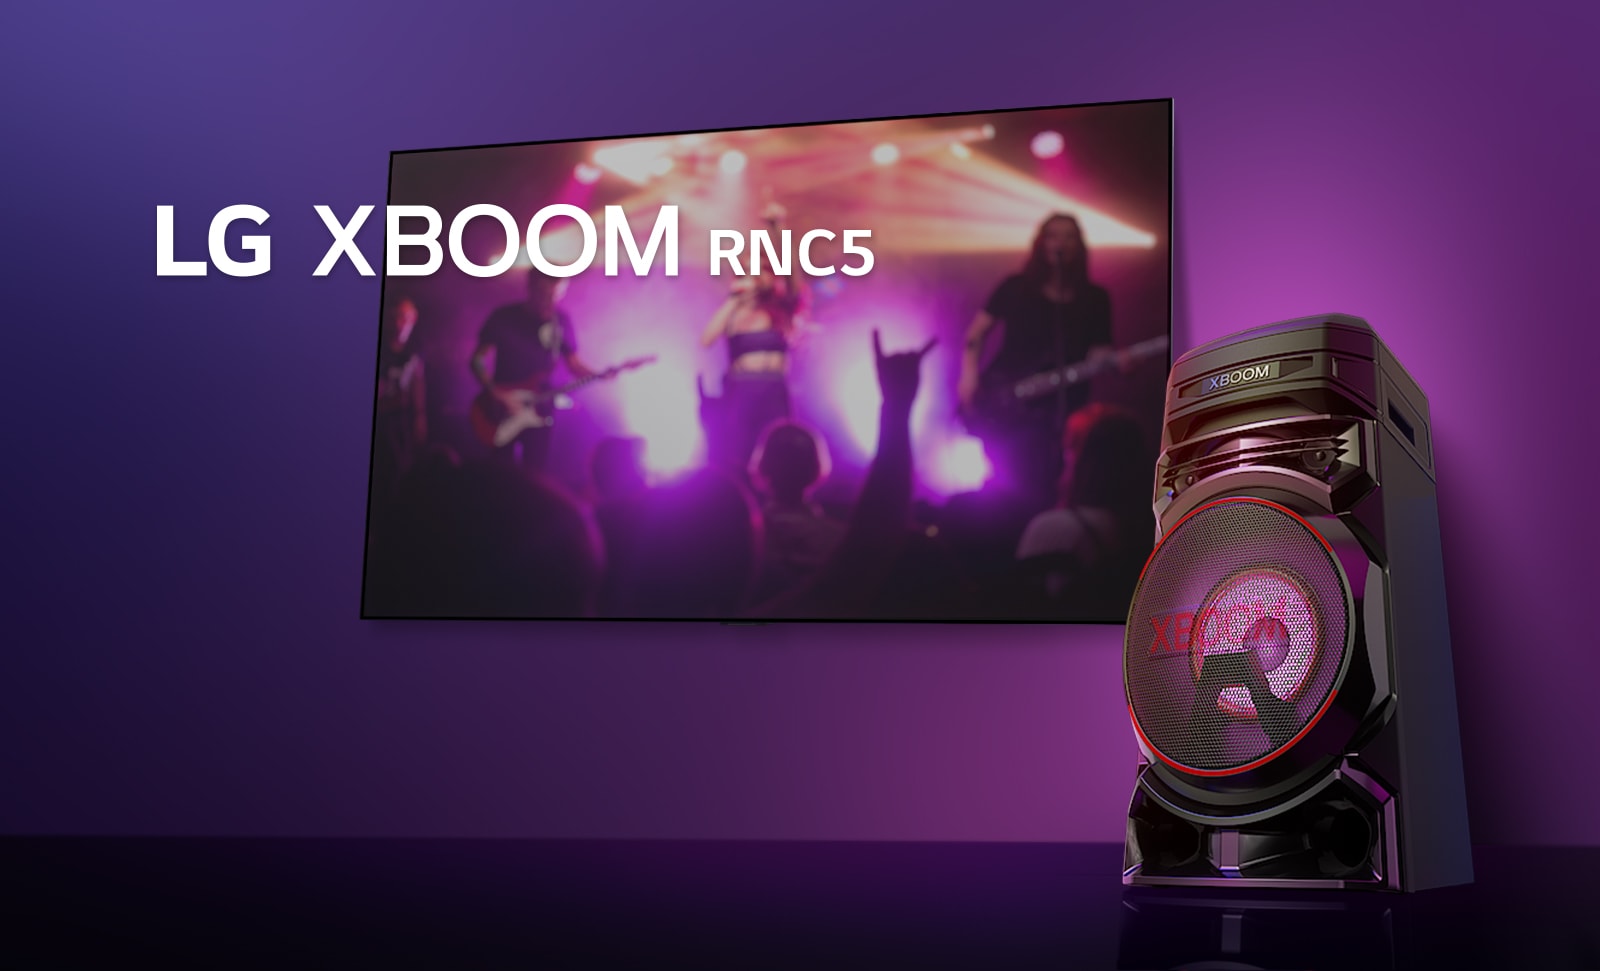 Изглед под нисък ъгъл на дясната страна на LG XBOOM RNC5 на пурпурен фон. <br> Светлината на XBOOM също е пурпурна. И телевизионен екран, на който се показва концертна сцена.